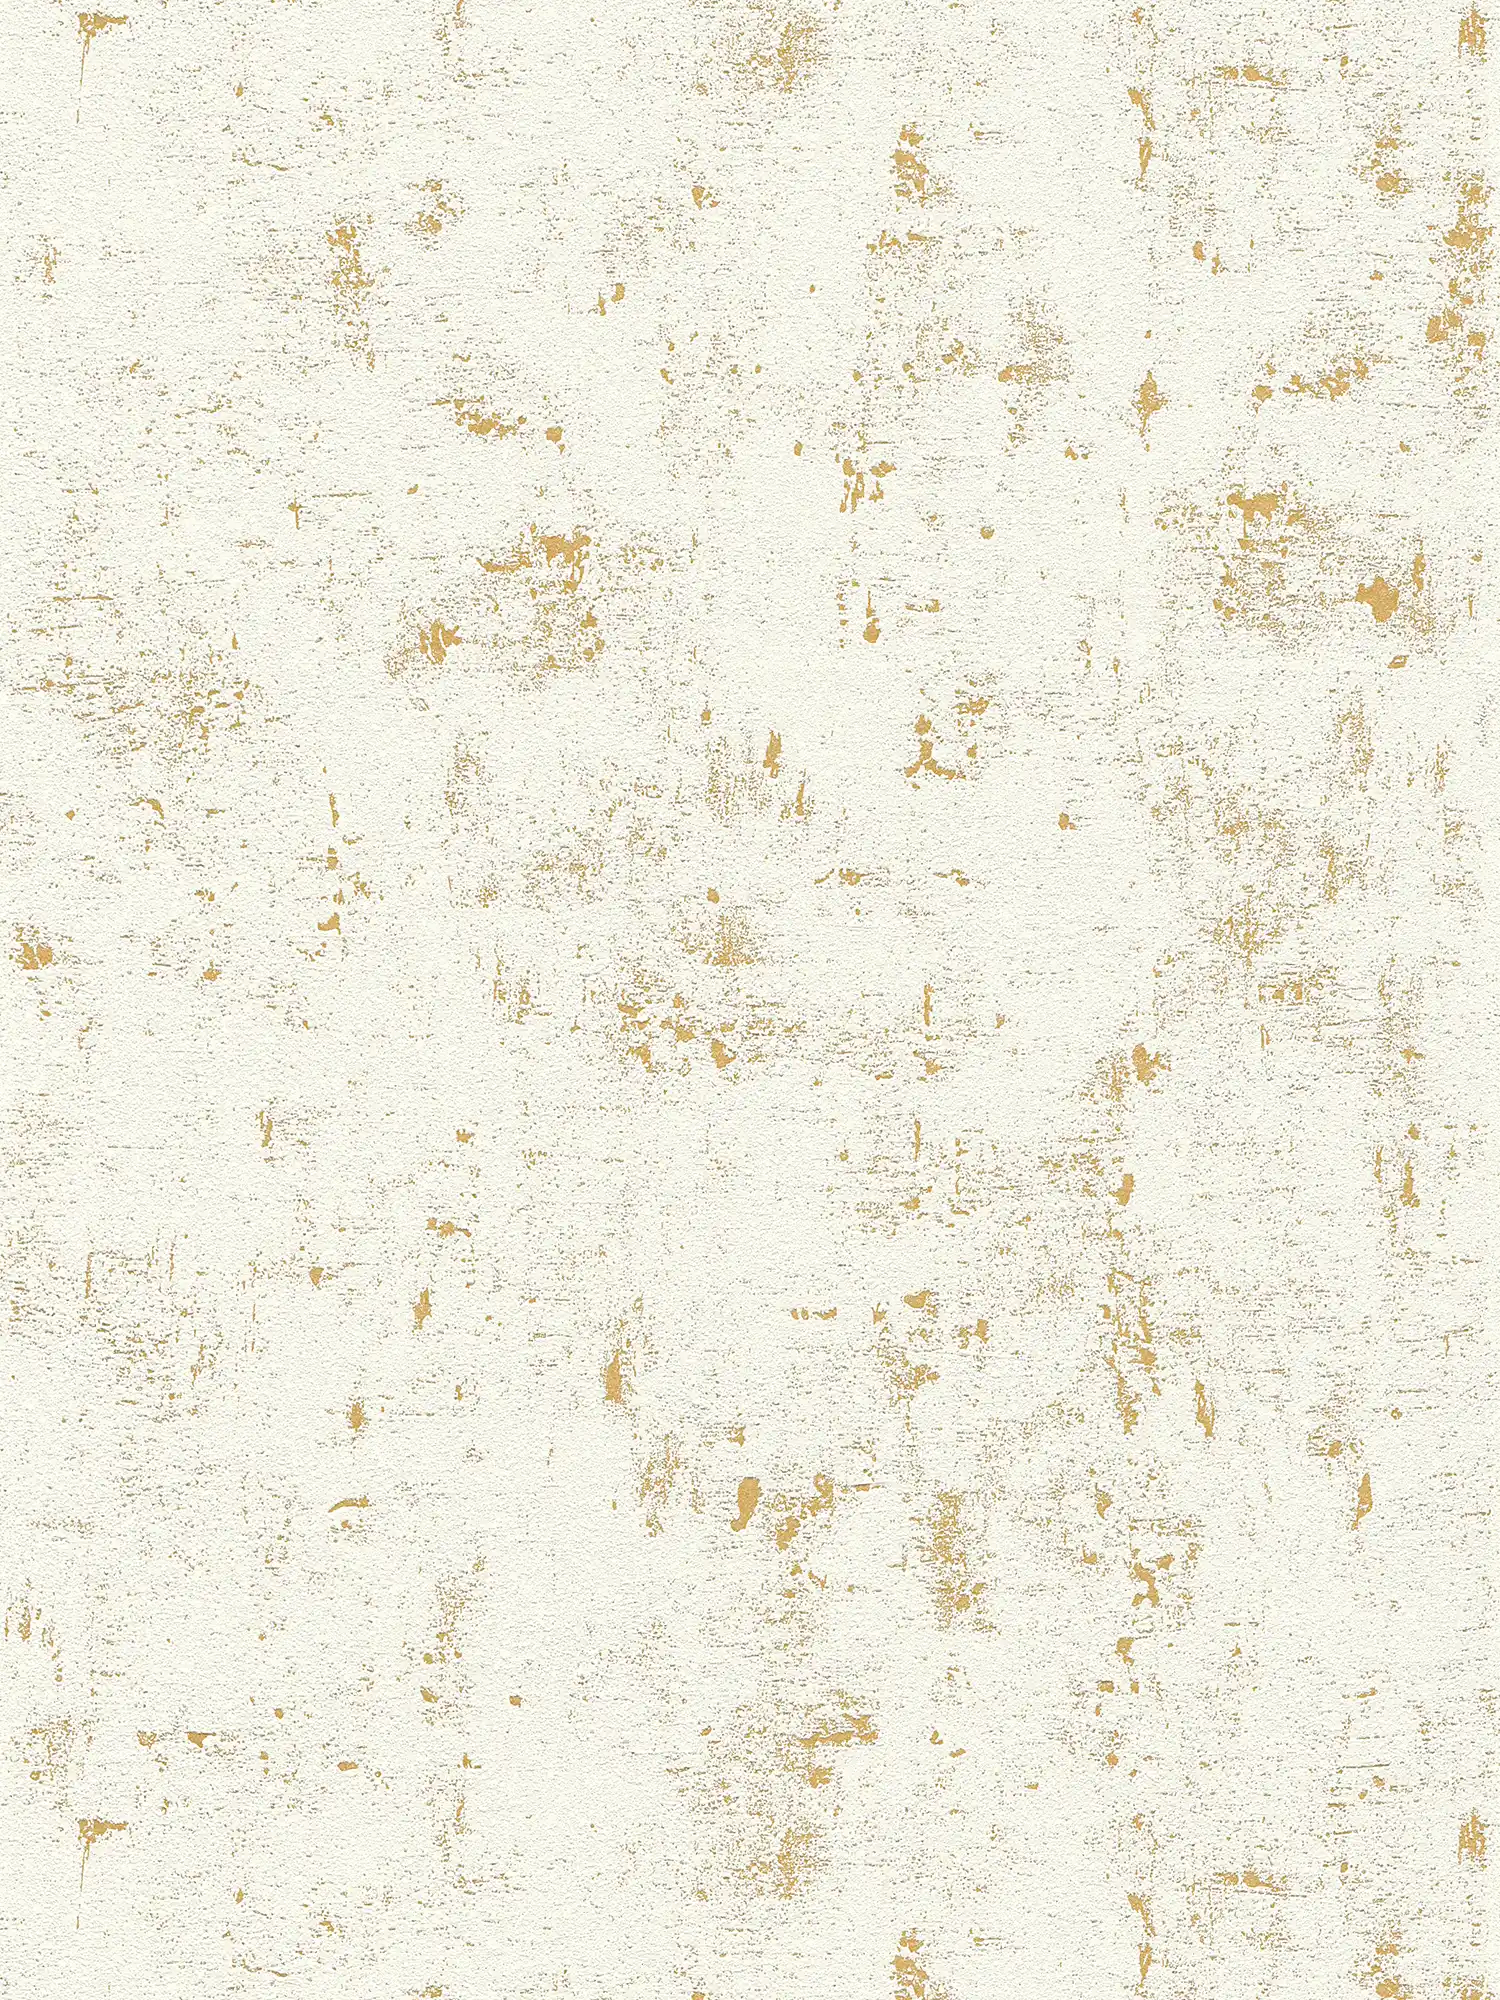 Papier peint aspect usé avec effet métallique - crème, or
